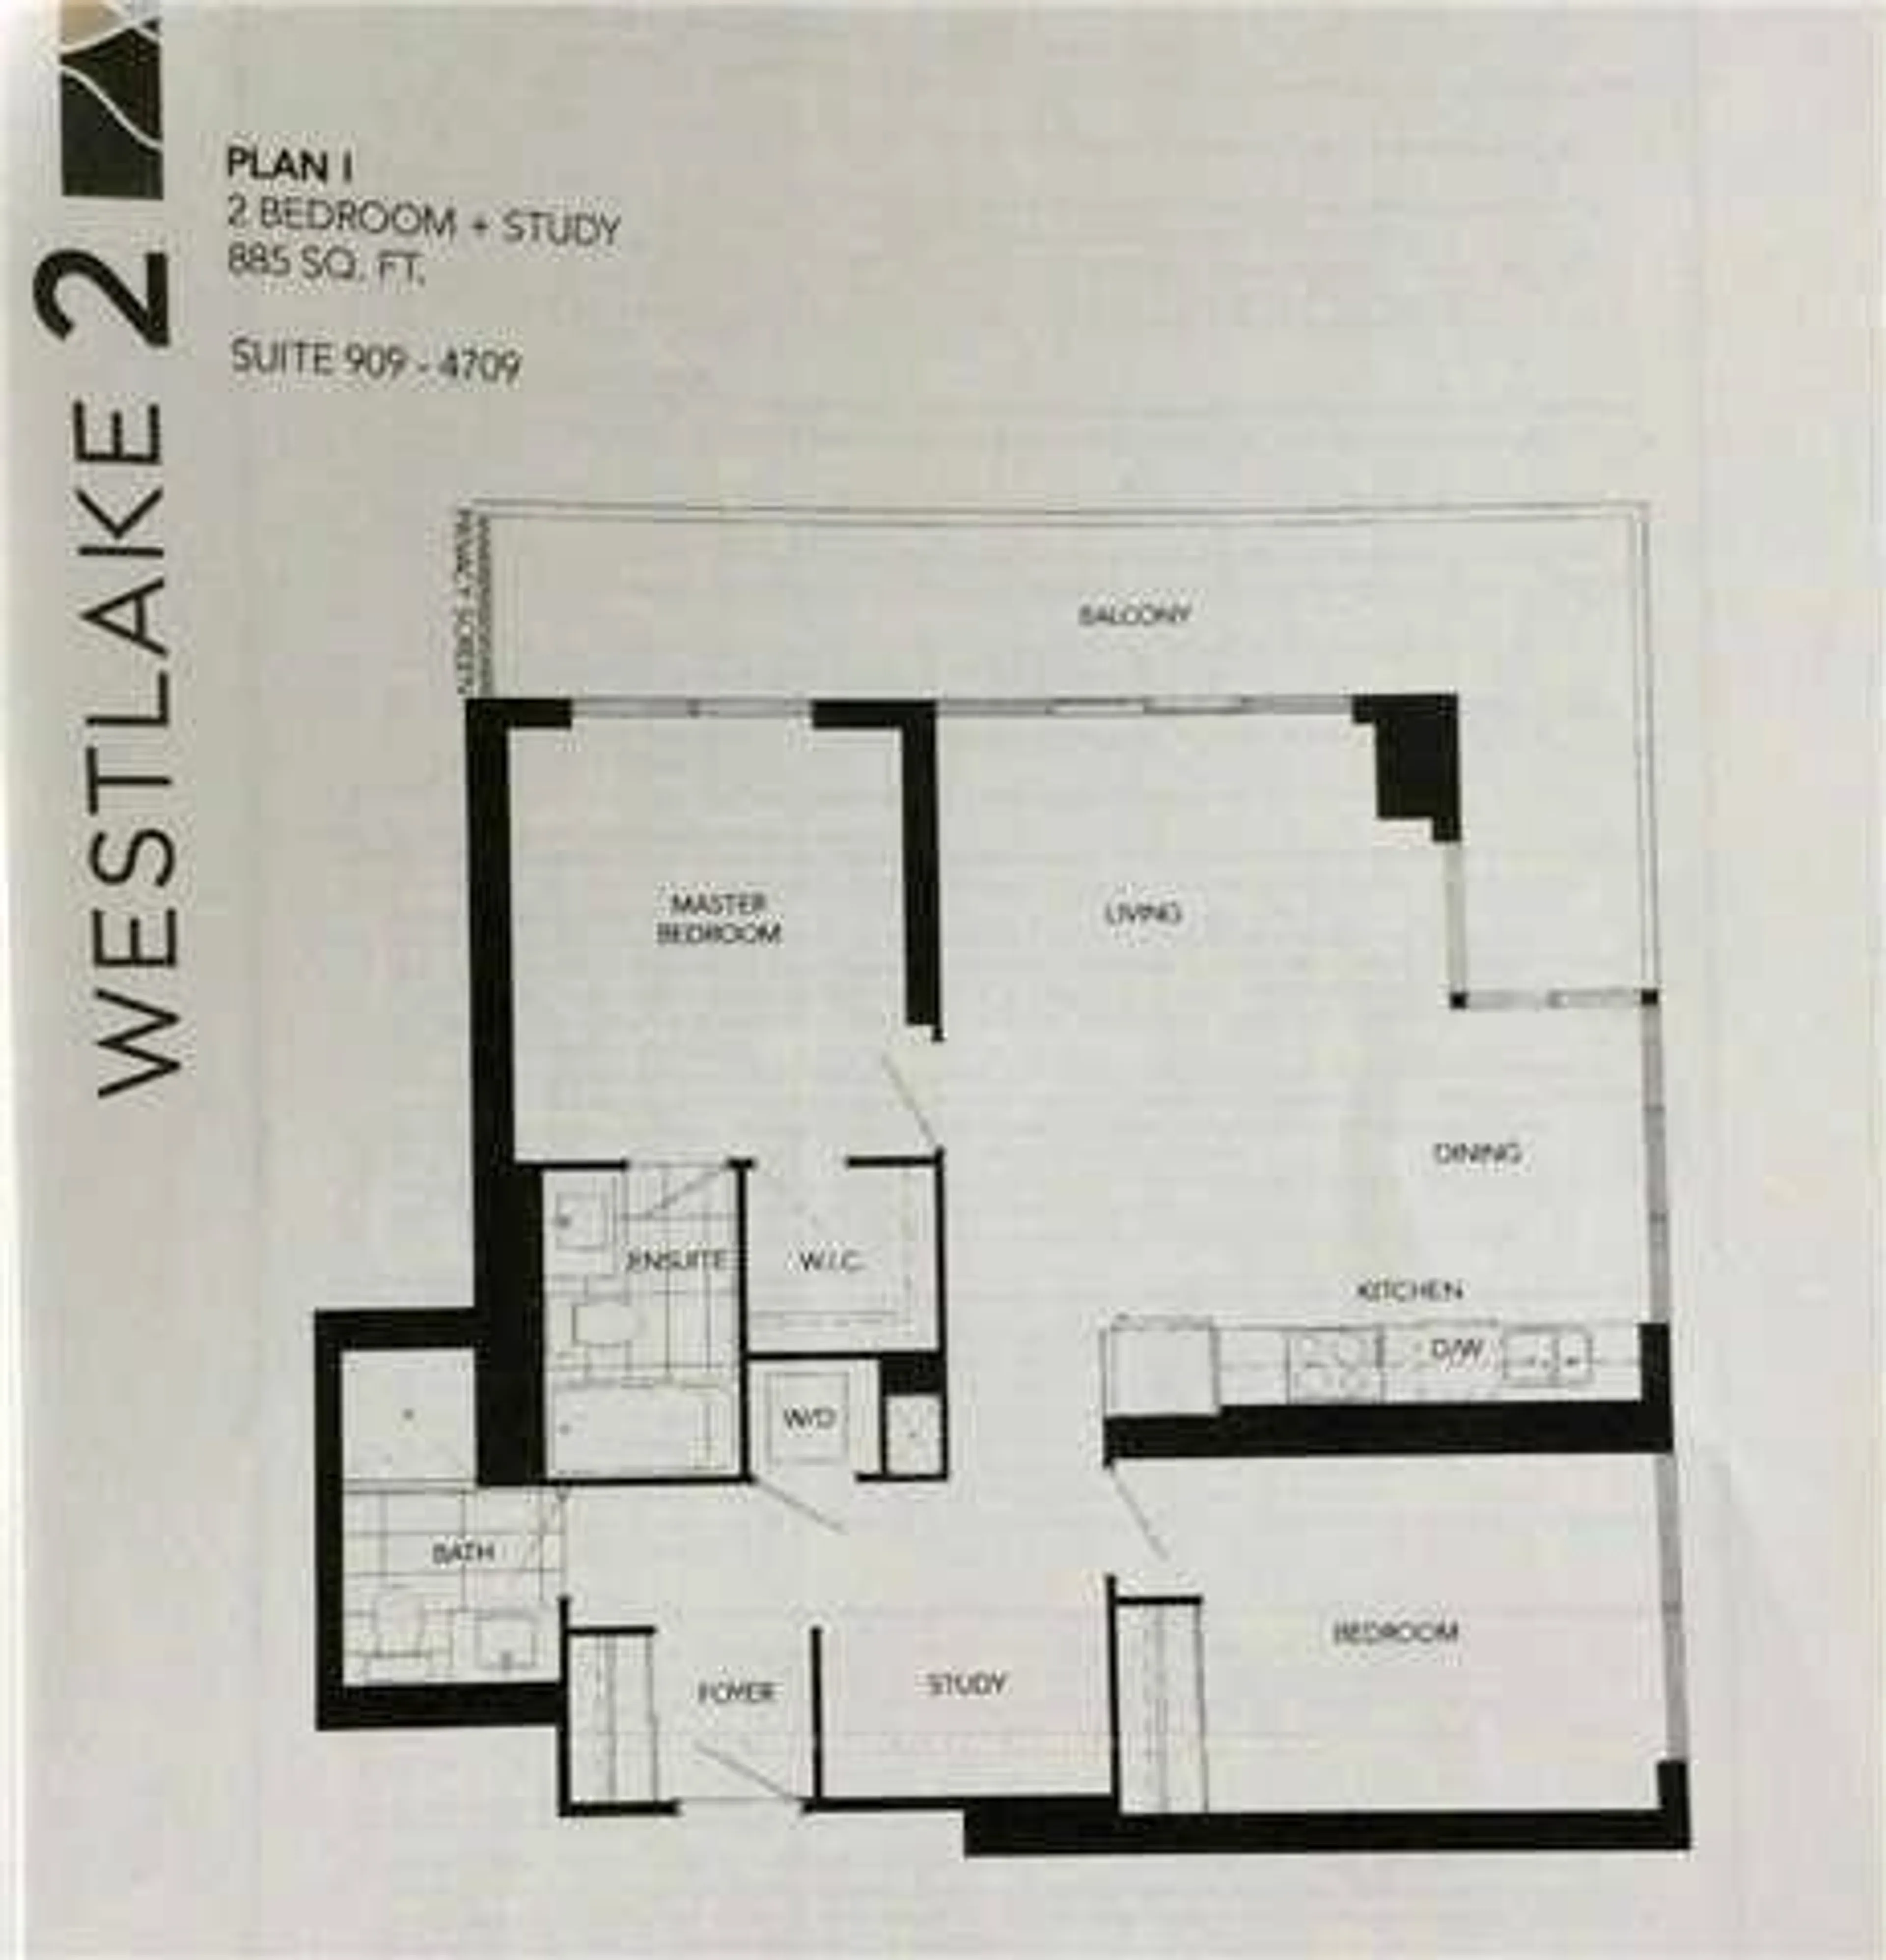 Floor plan for 2200 Lake Shore Blvd #4209, Toronto Ontario M8V 1A4